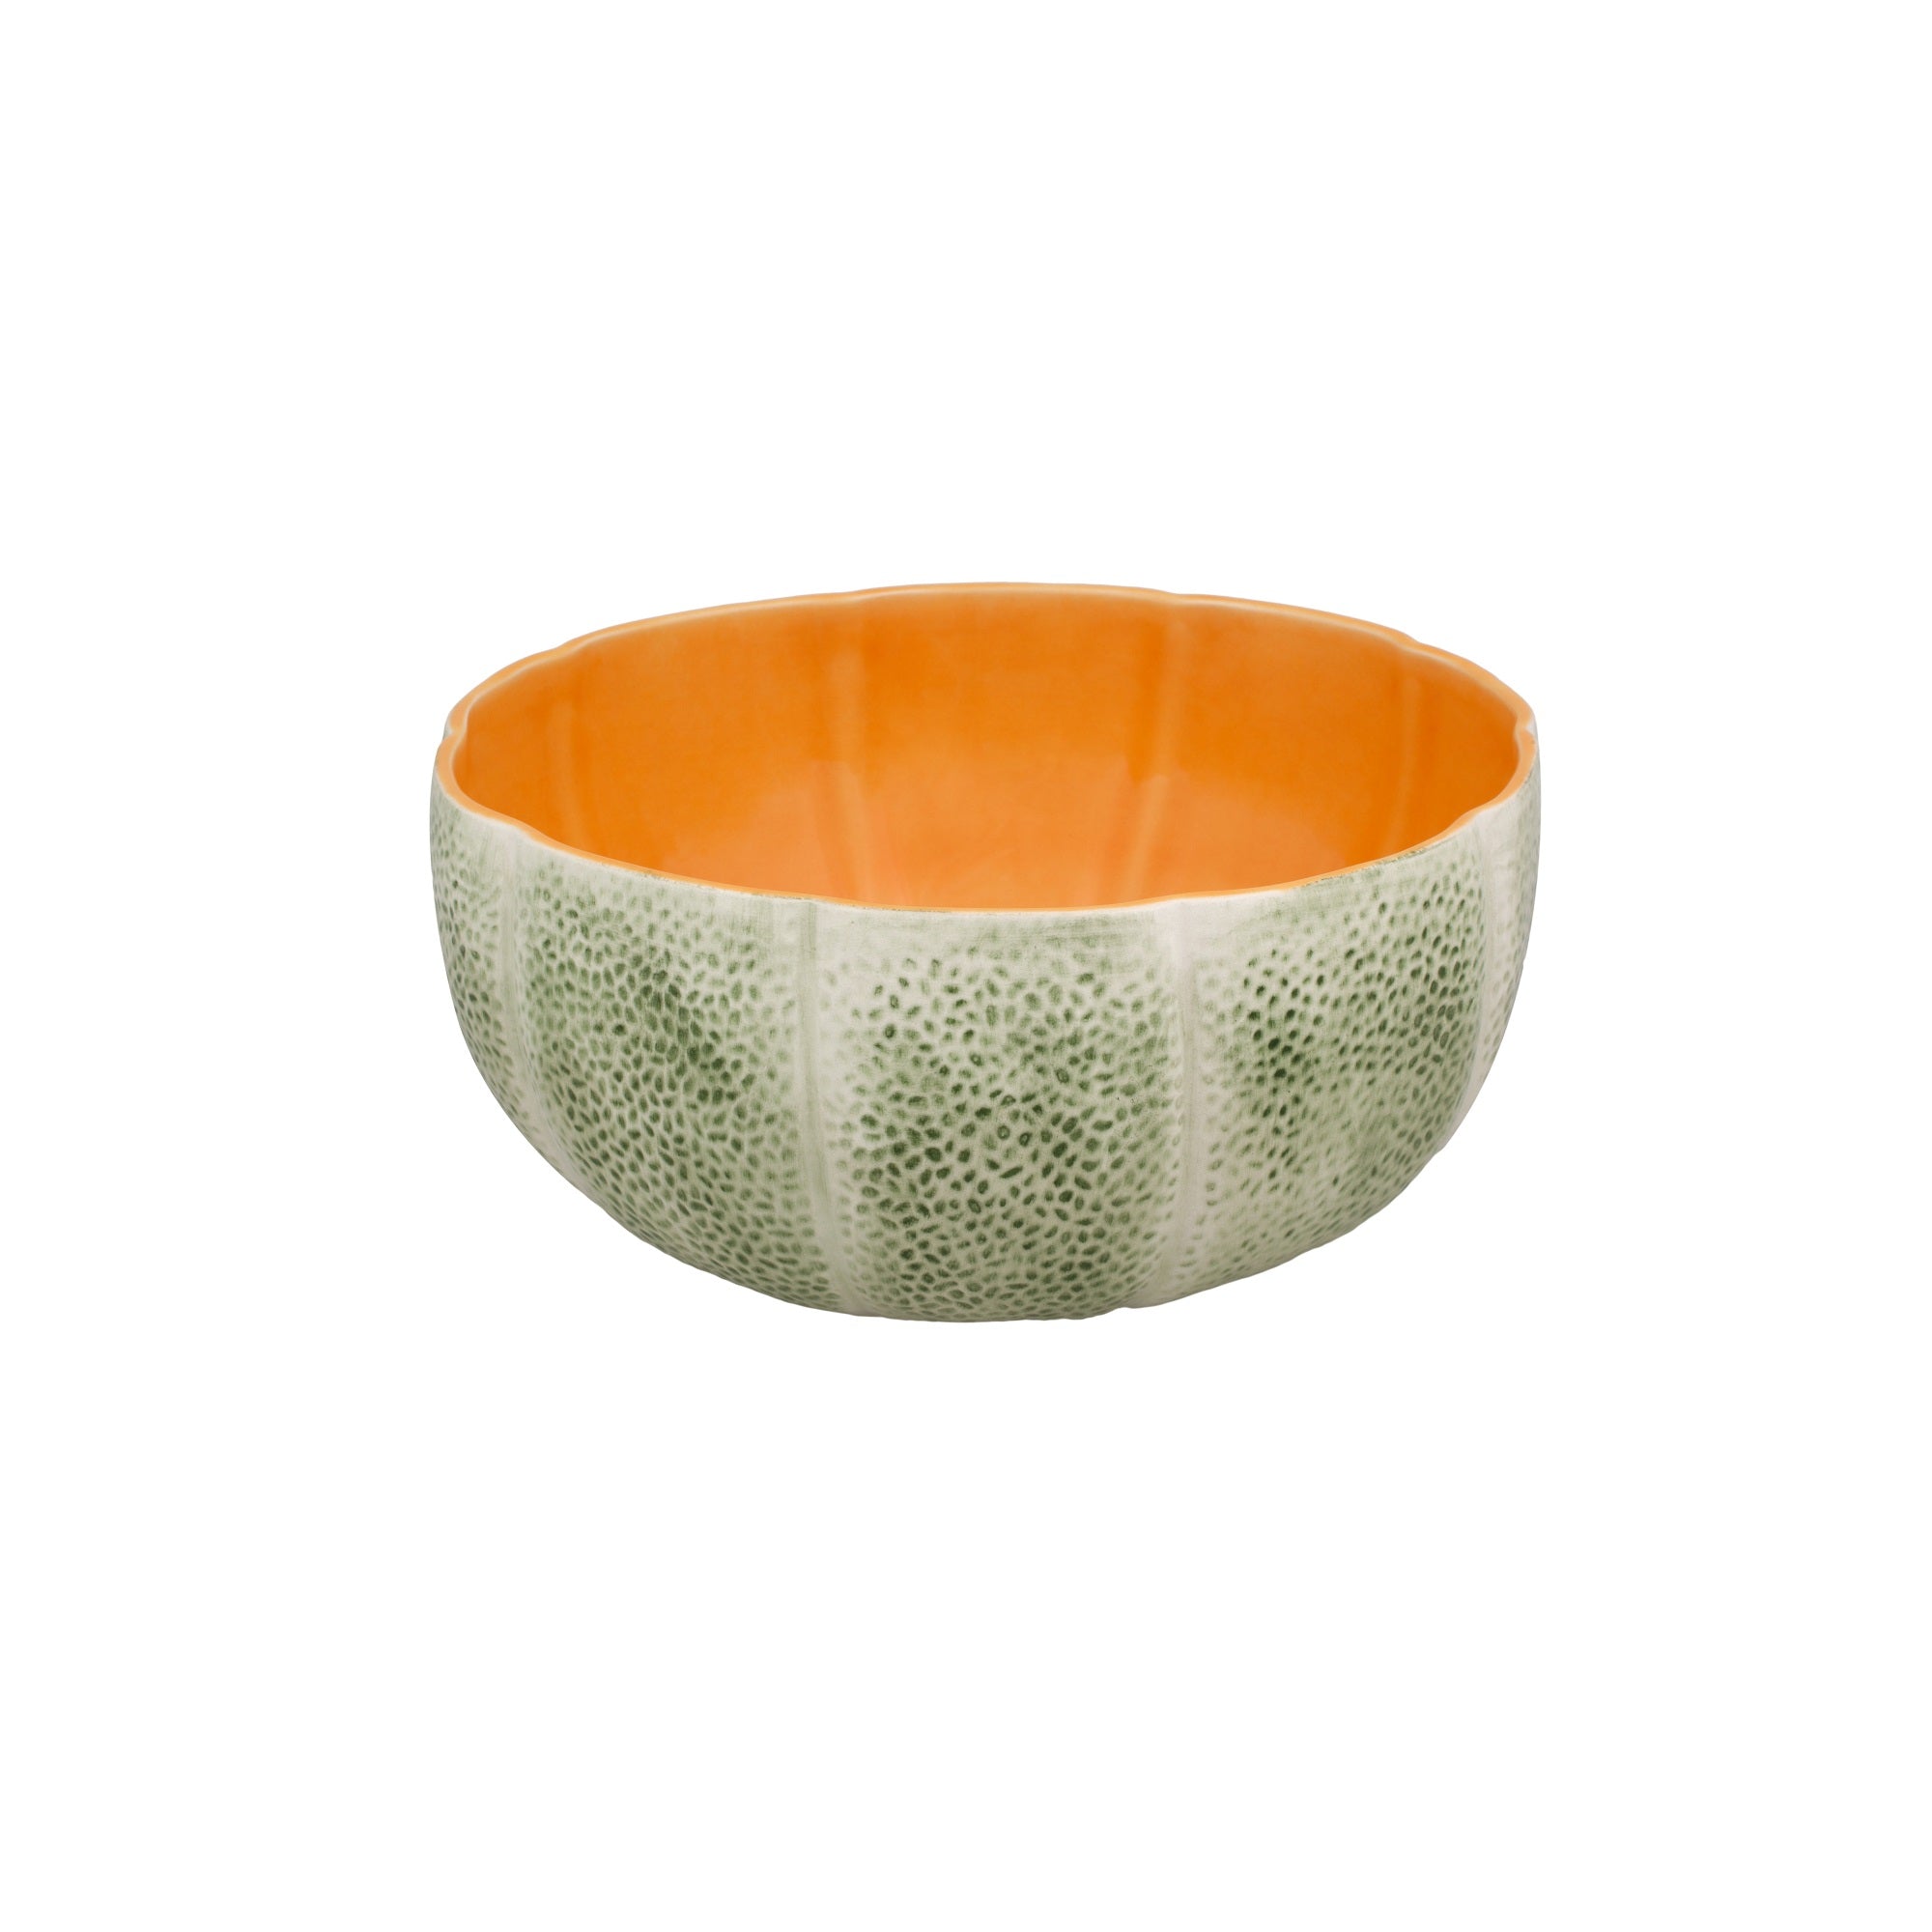 Bordallo Pinheiro Meloa Melon Salad Bowl, 25 cm